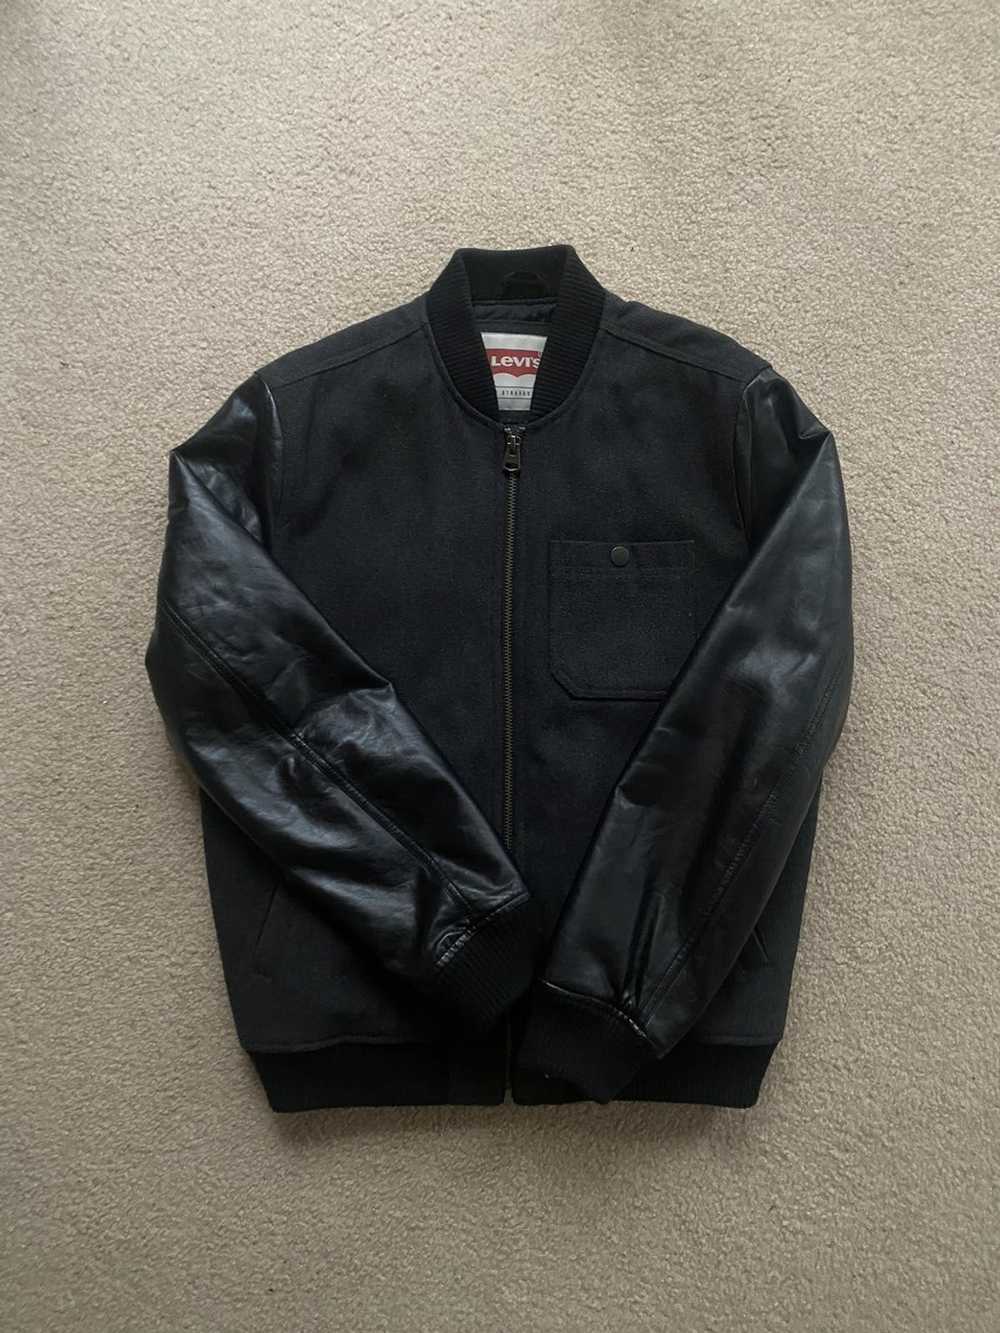 Levi's Varsity jacket - image 3